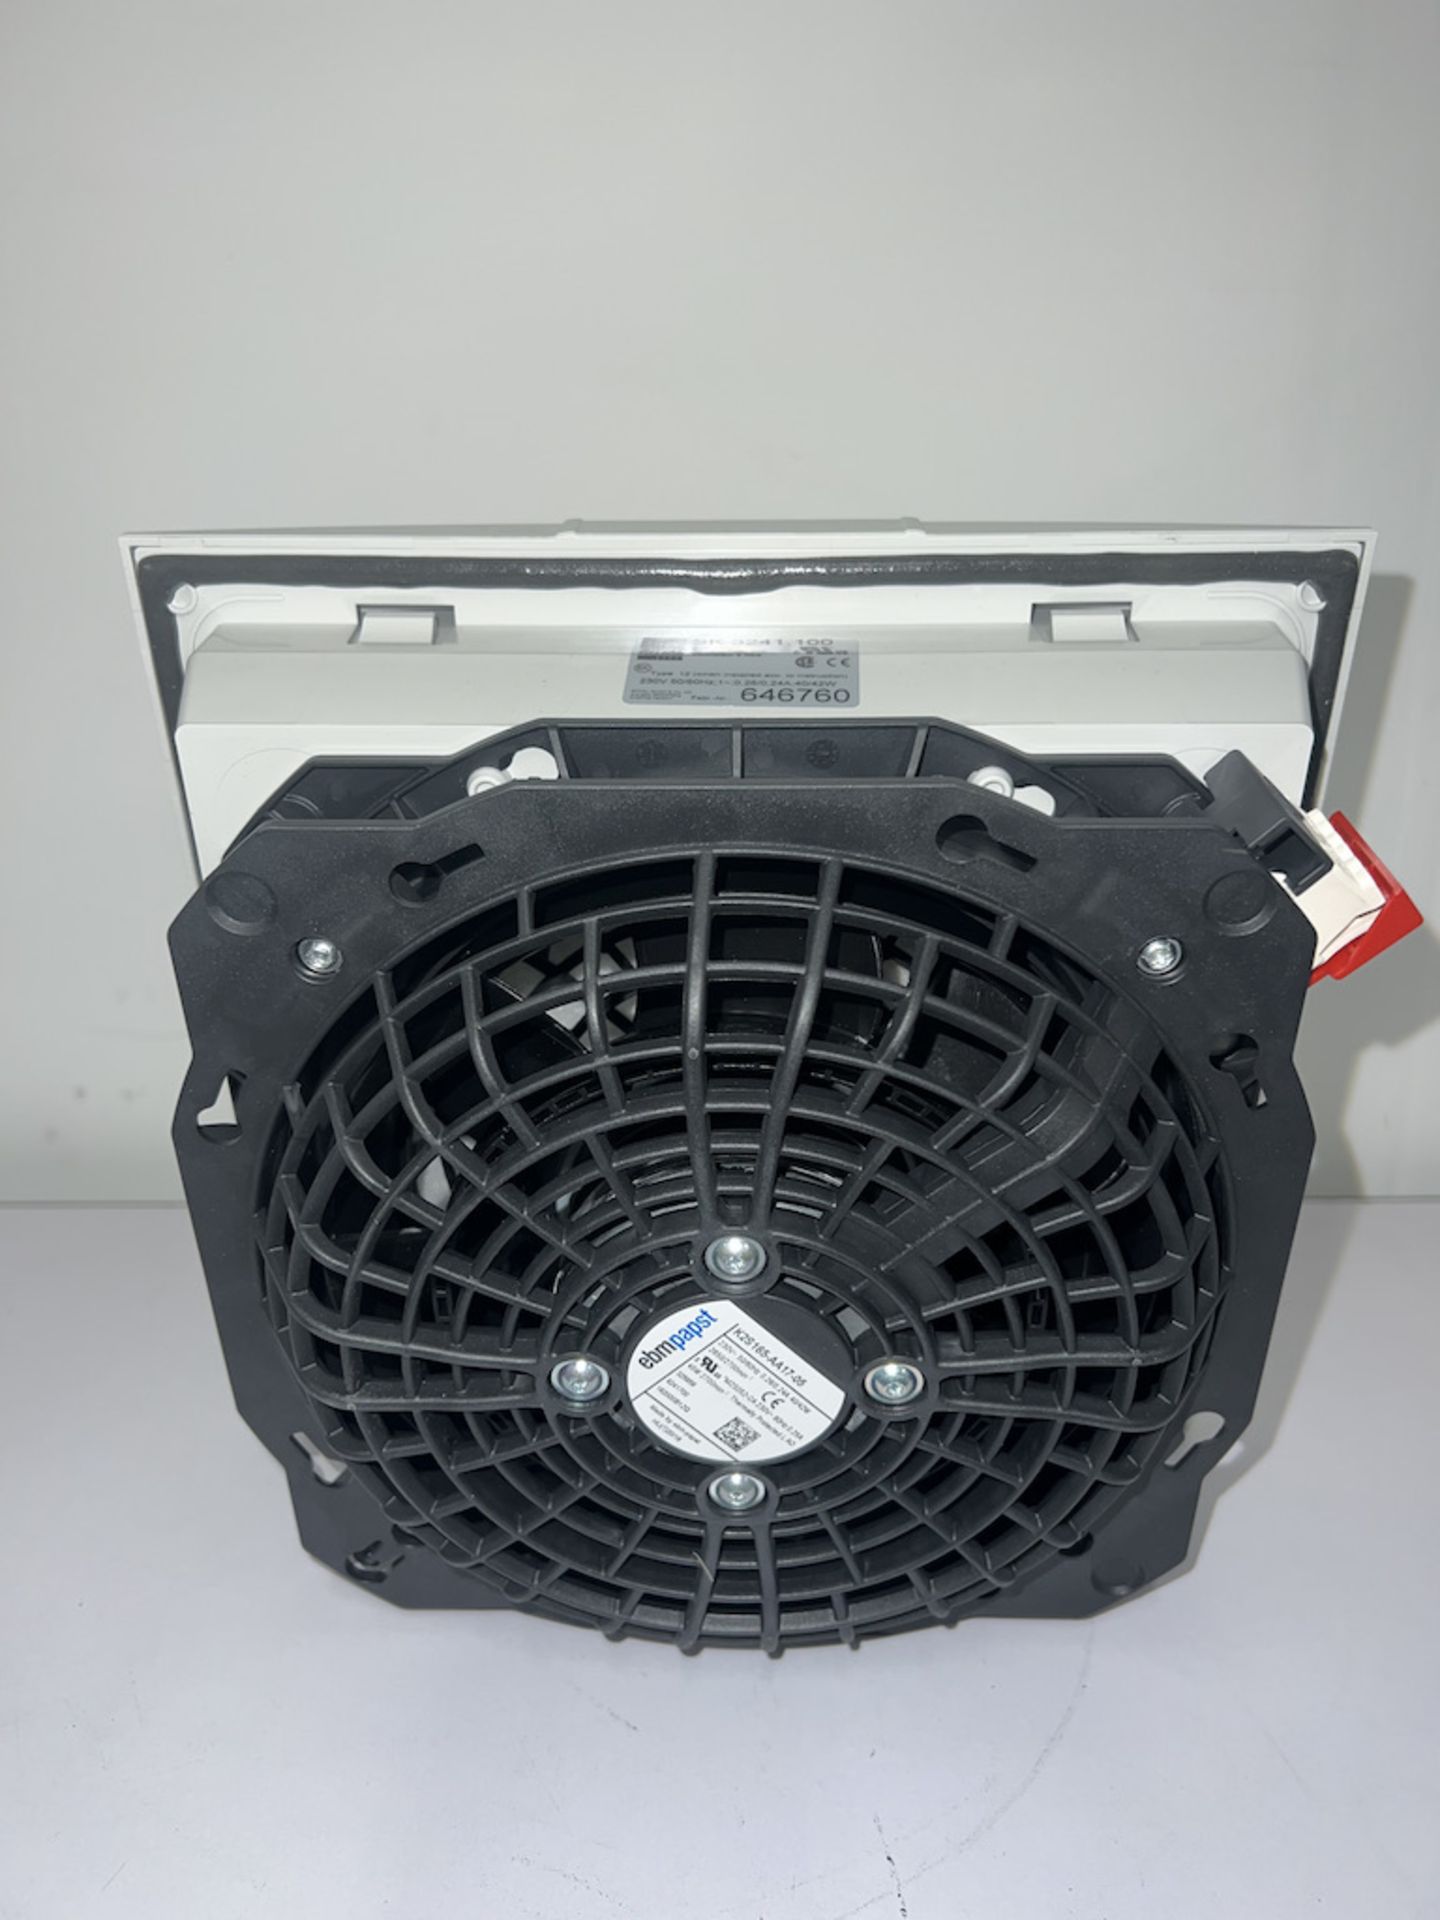 Rittal CNT 41W Filter Fan - Image 2 of 2